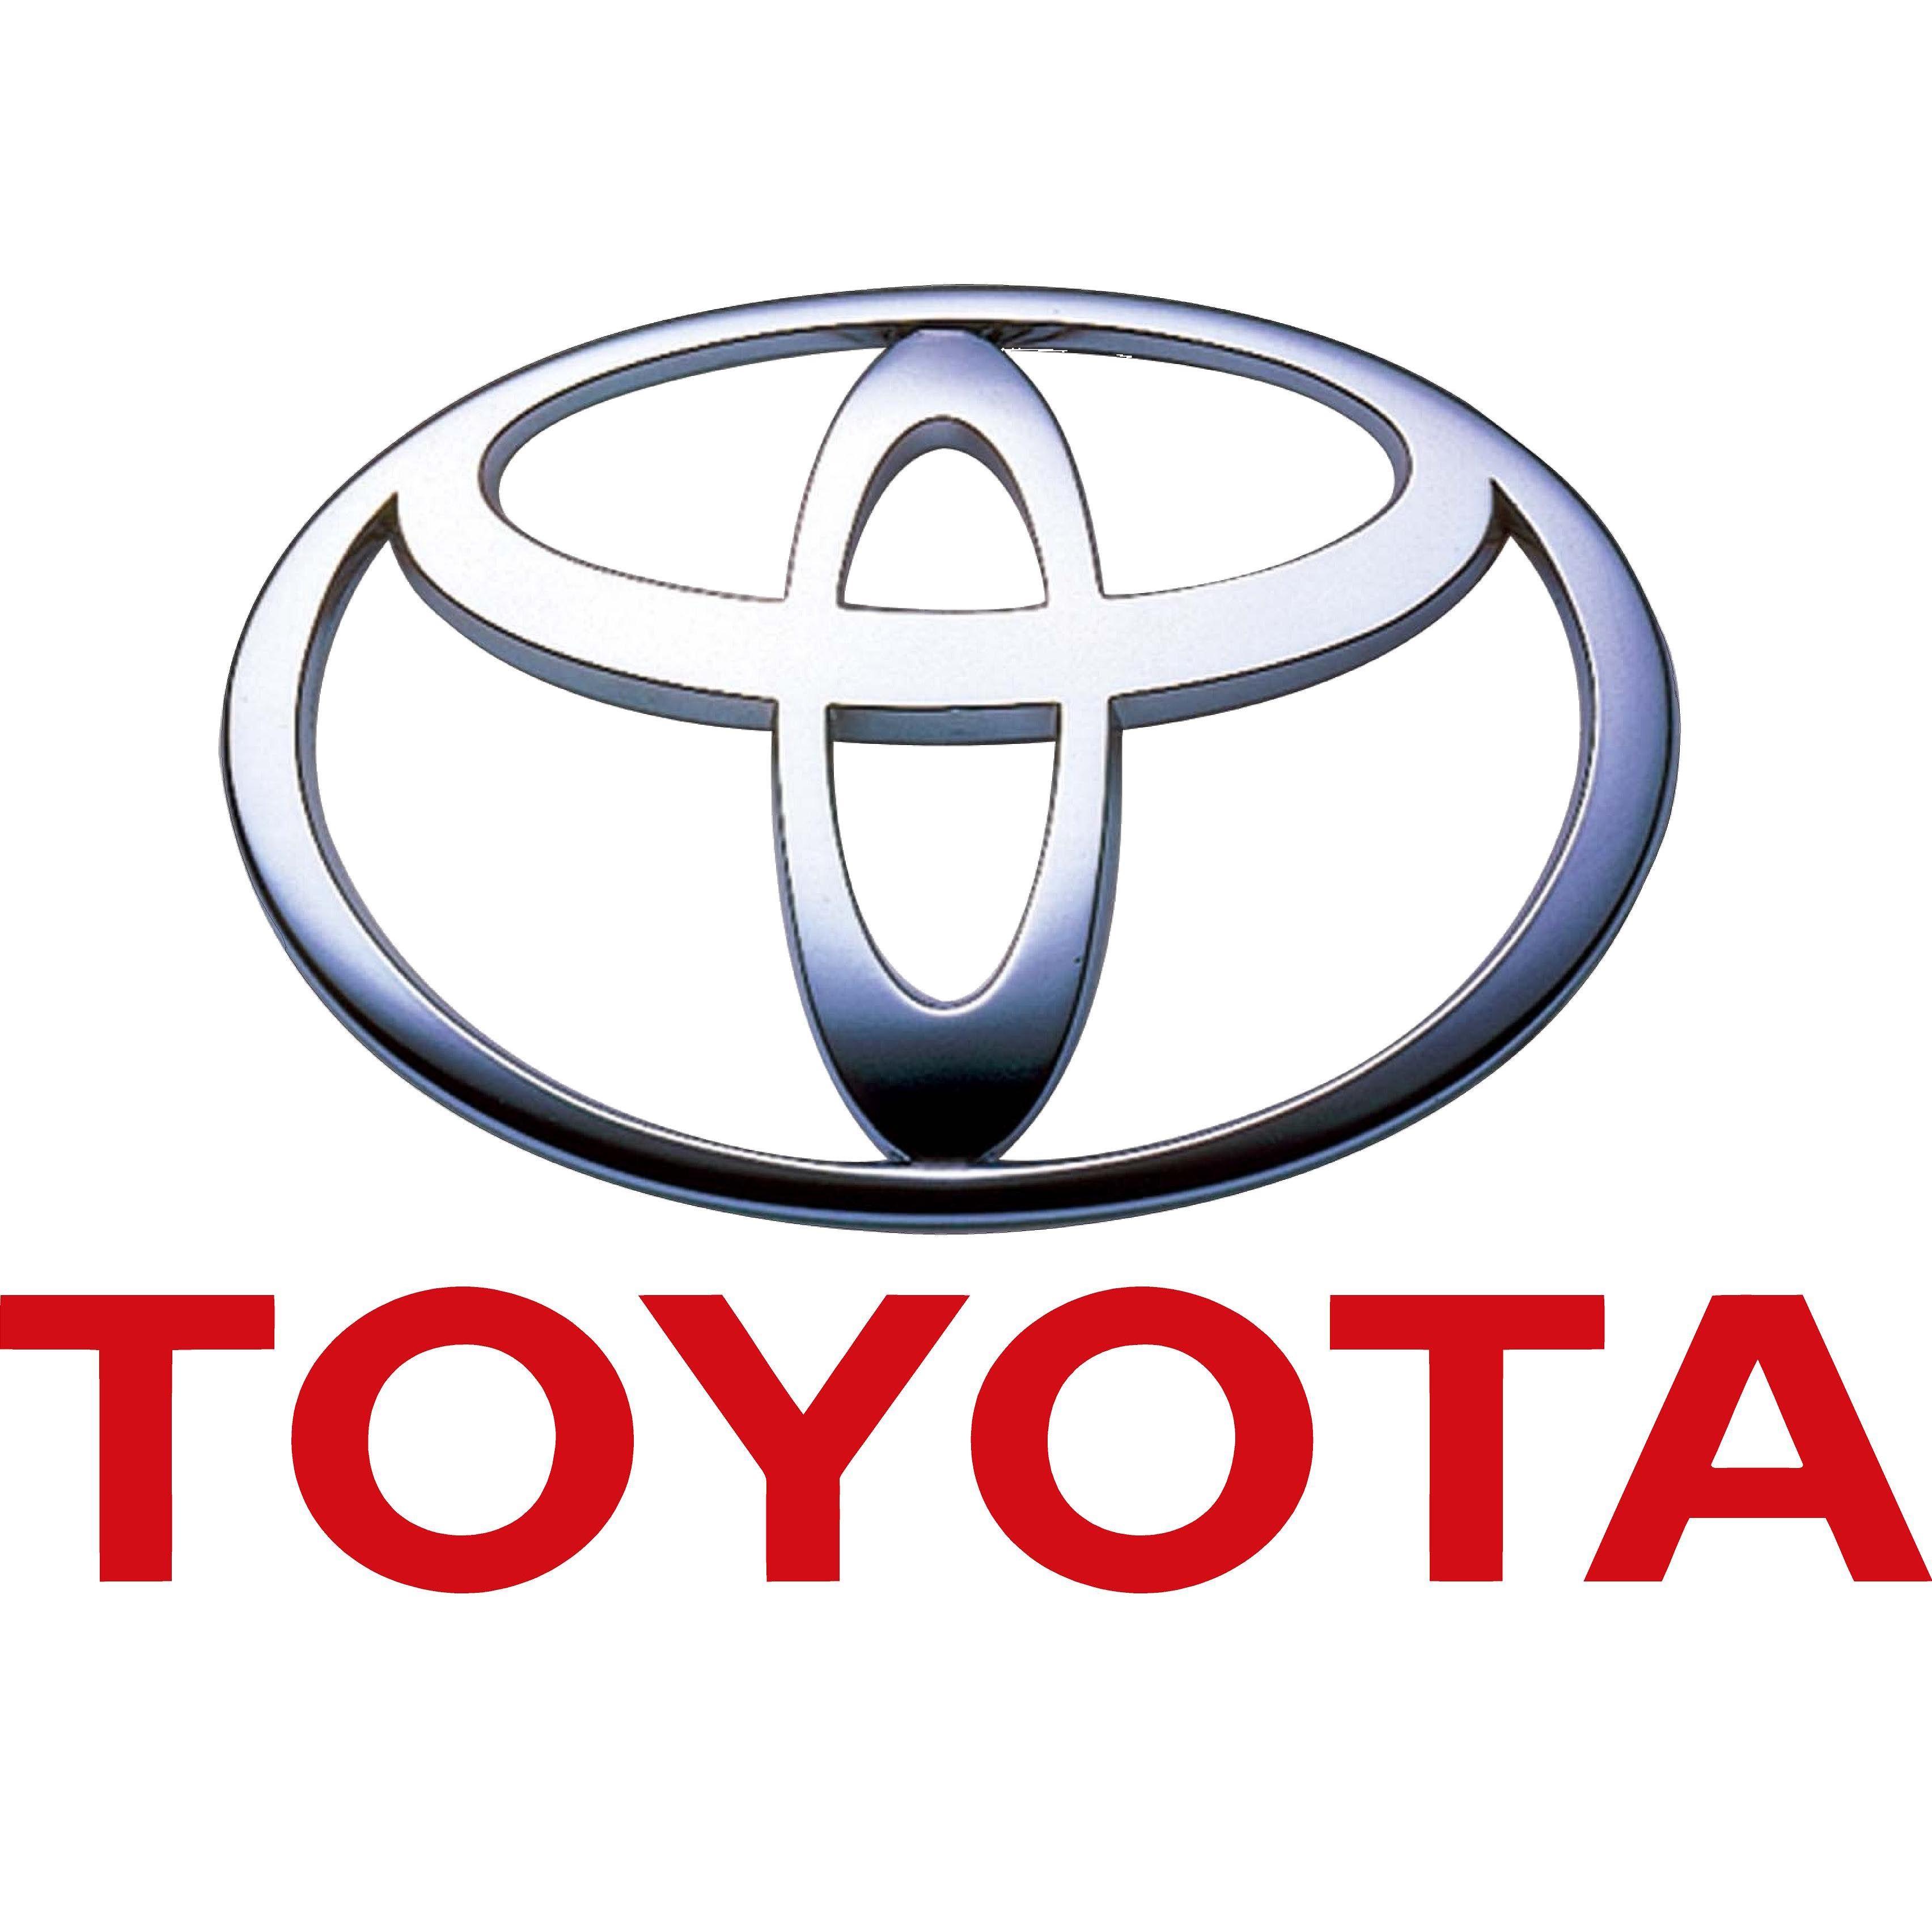 Toyota Logo - Toyota Logo, Toyota Car Symbol Meaning and History | Car Brand Names.com